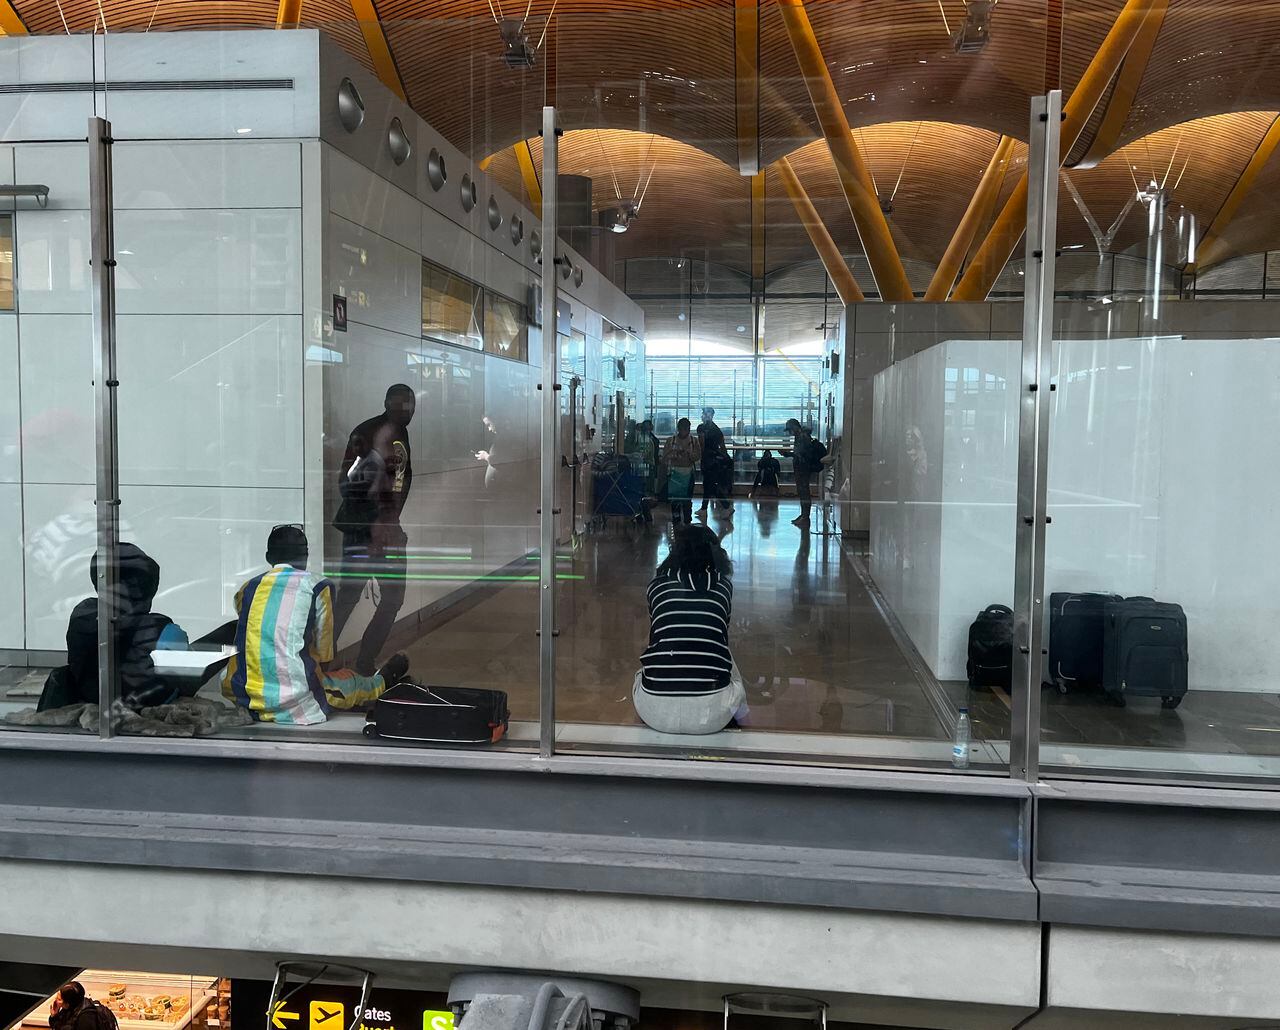 Superpoblación, condiciones insalubres: el aeropuerto de Madrid se enfrenta actualmente a una afluencia sin precedentes de solicitantes de asilo africanos.